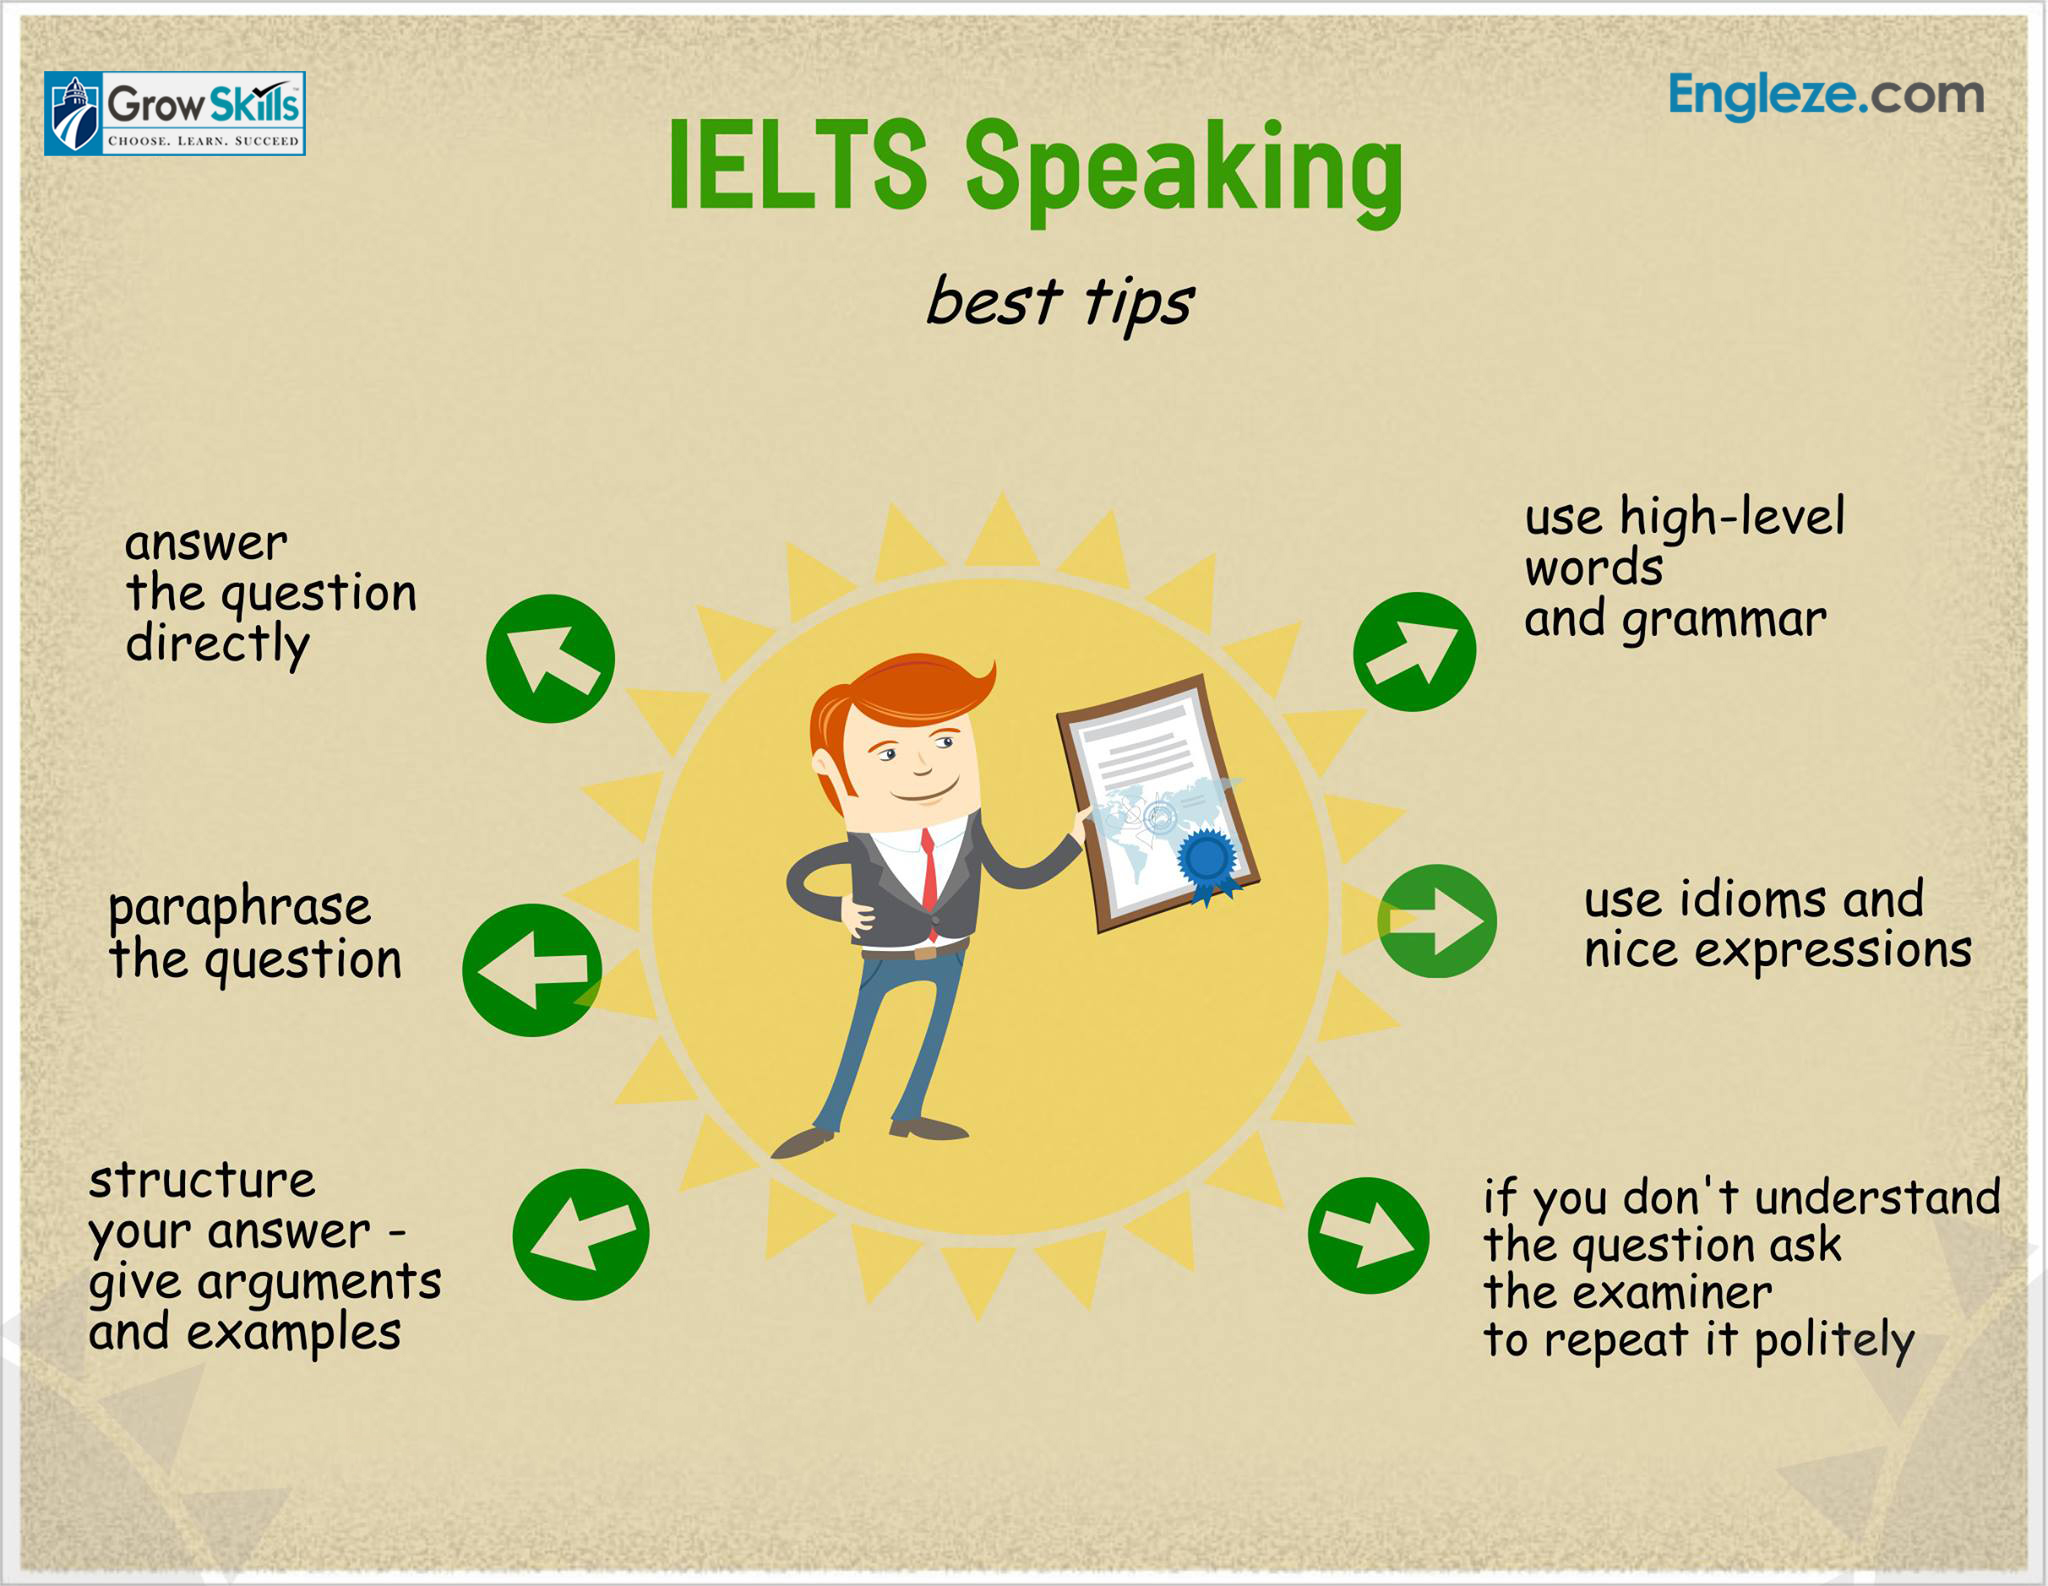 IELTS Speaking best Tips - Engleze.com